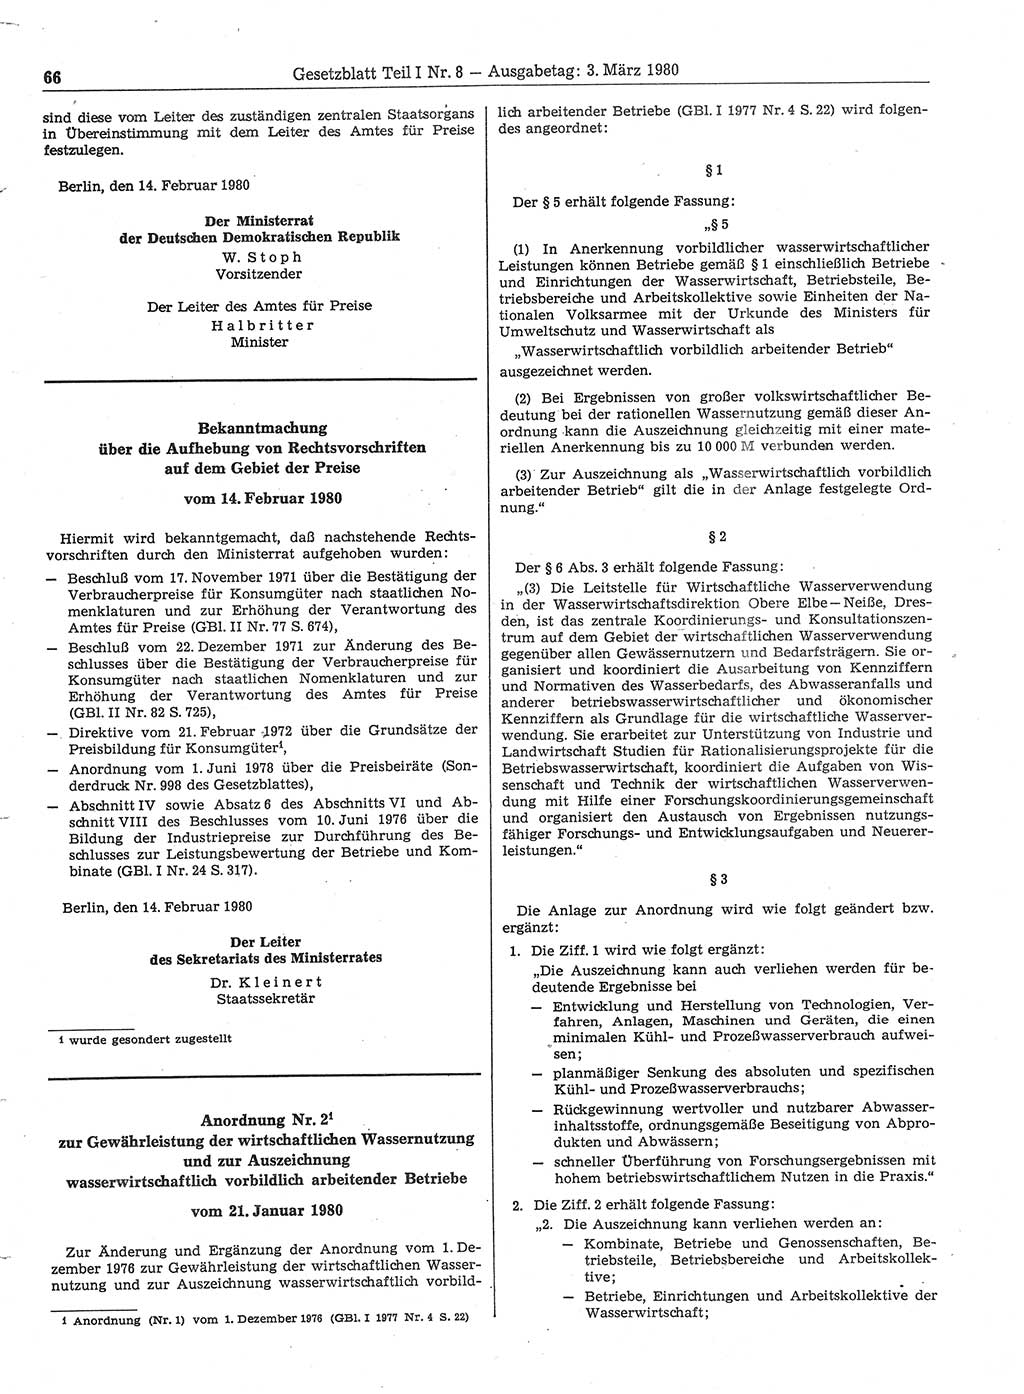 Gesetzblatt (GBl.) der Deutschen Demokratischen Republik (DDR) Teil Ⅰ 1980, Seite 66 (GBl. DDR Ⅰ 1980, S. 66)